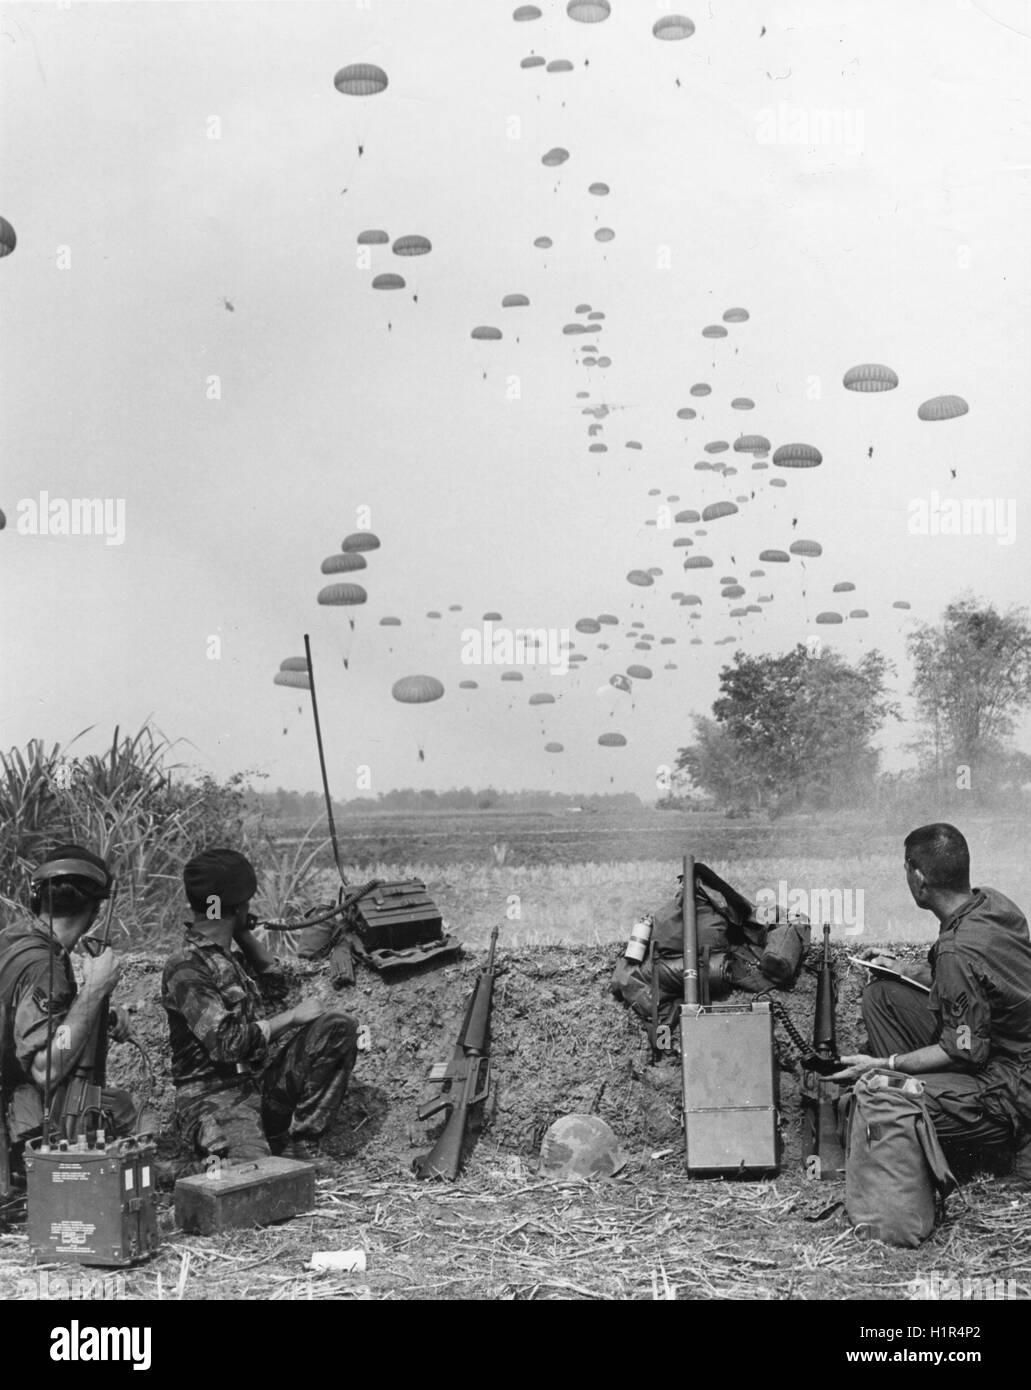 Mitglieder der ersten uns Air Force Combat Control Team Uhr Fallschirmjäger der Armee von Vietnam Airborne Division Tropfen in einem Vietcong infiltriert Bereich. Stockfoto